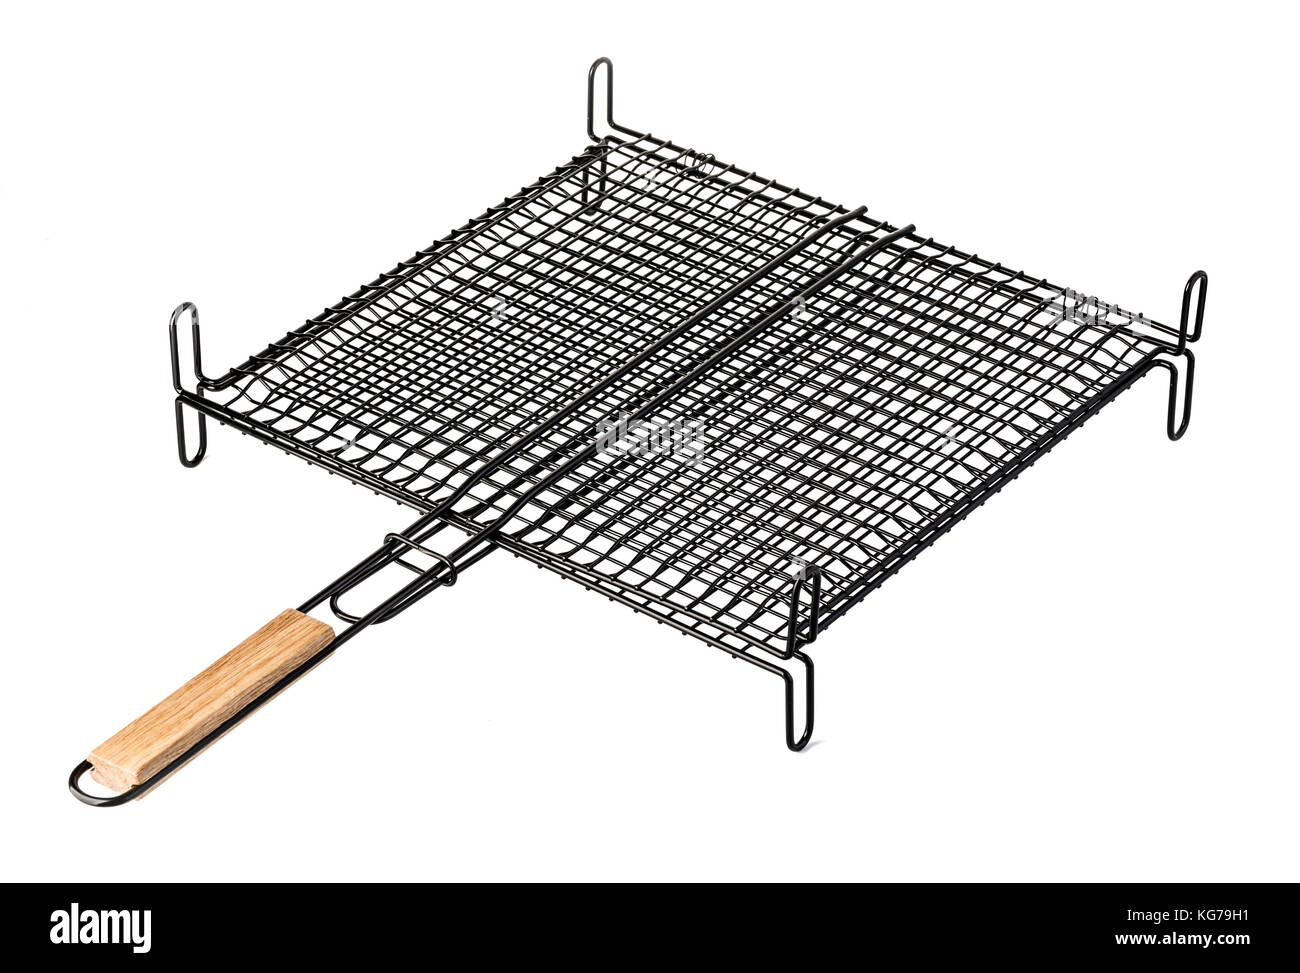 In acciaio inox grill barbecue camping cestello isolato su bianco Foto Stock